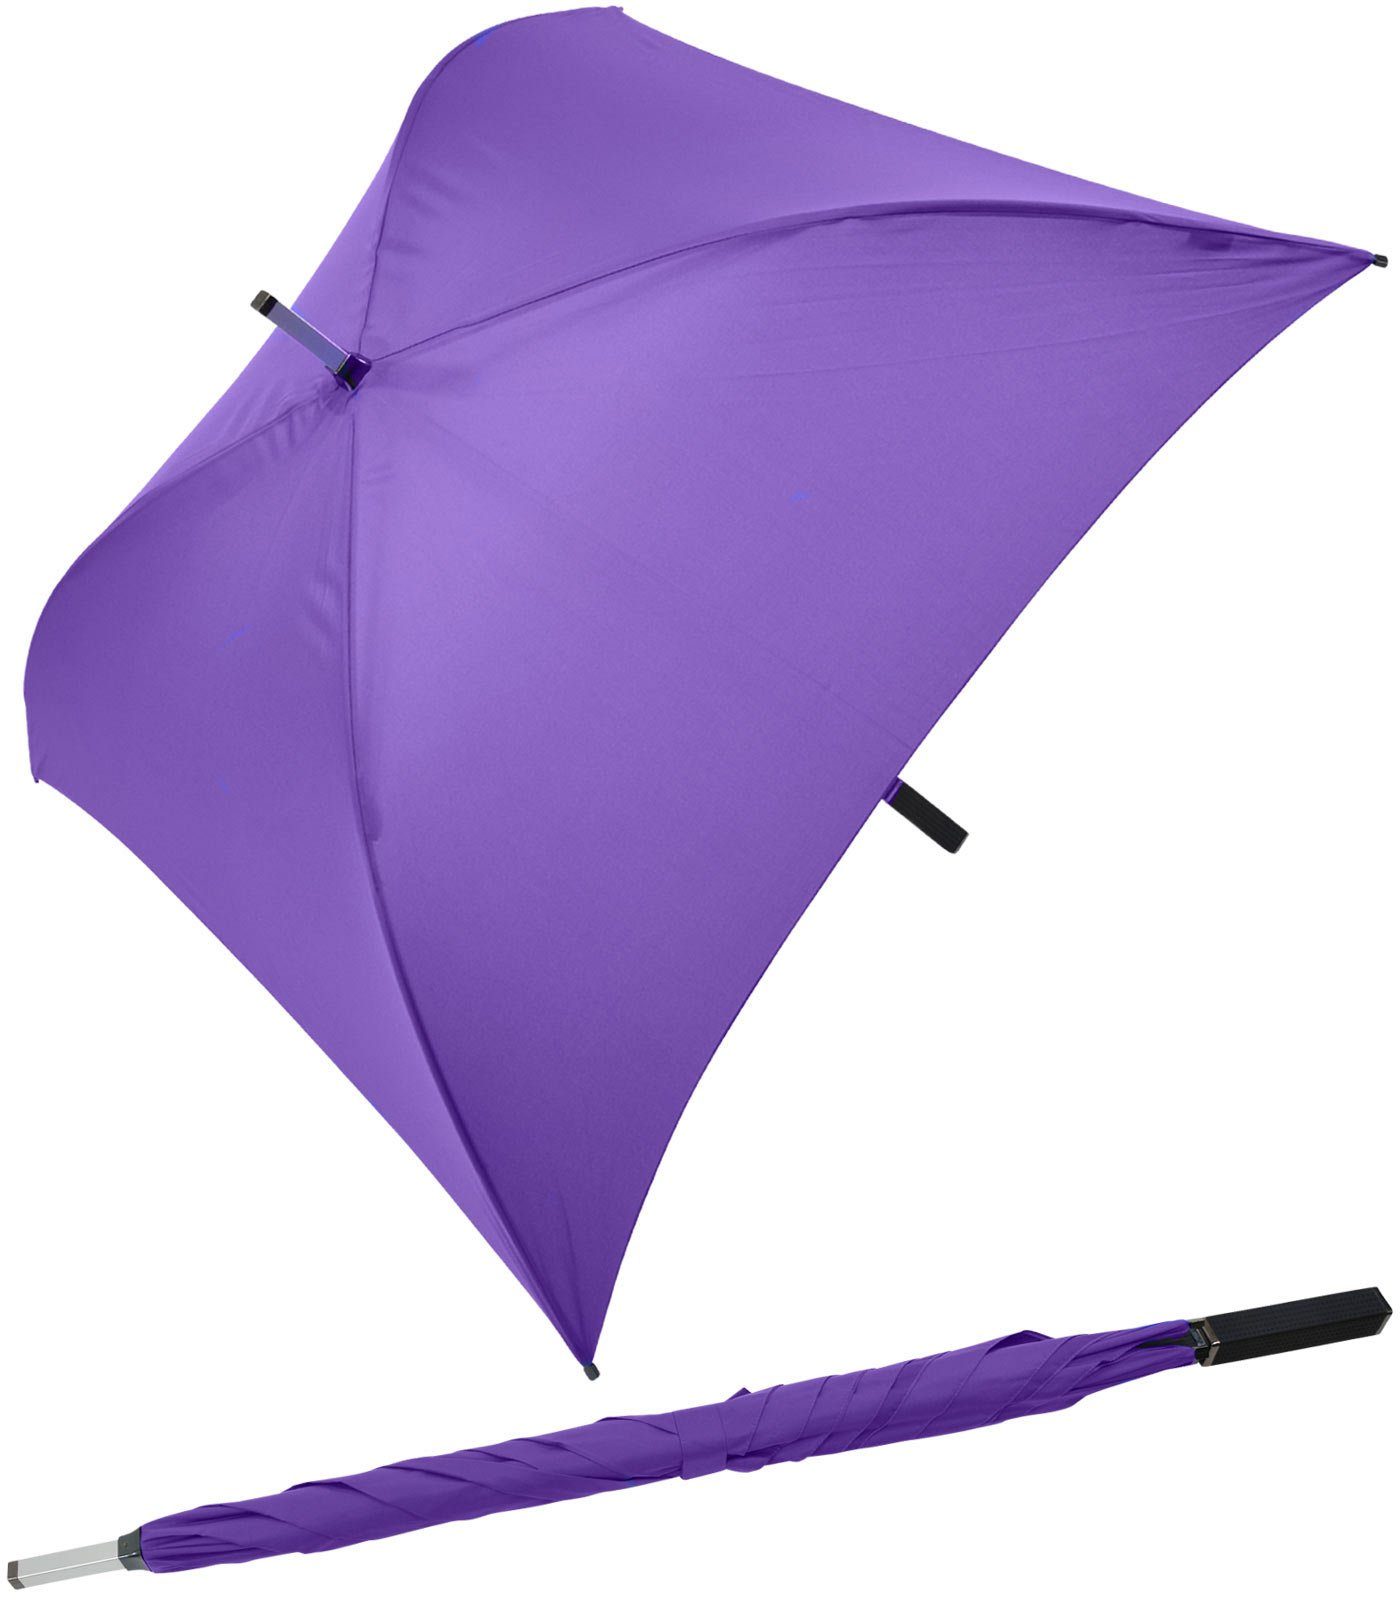 Impliva Langregenschirm All Square® voll quadratischer Regenschirm, der ganz besondere Regenschirm violett